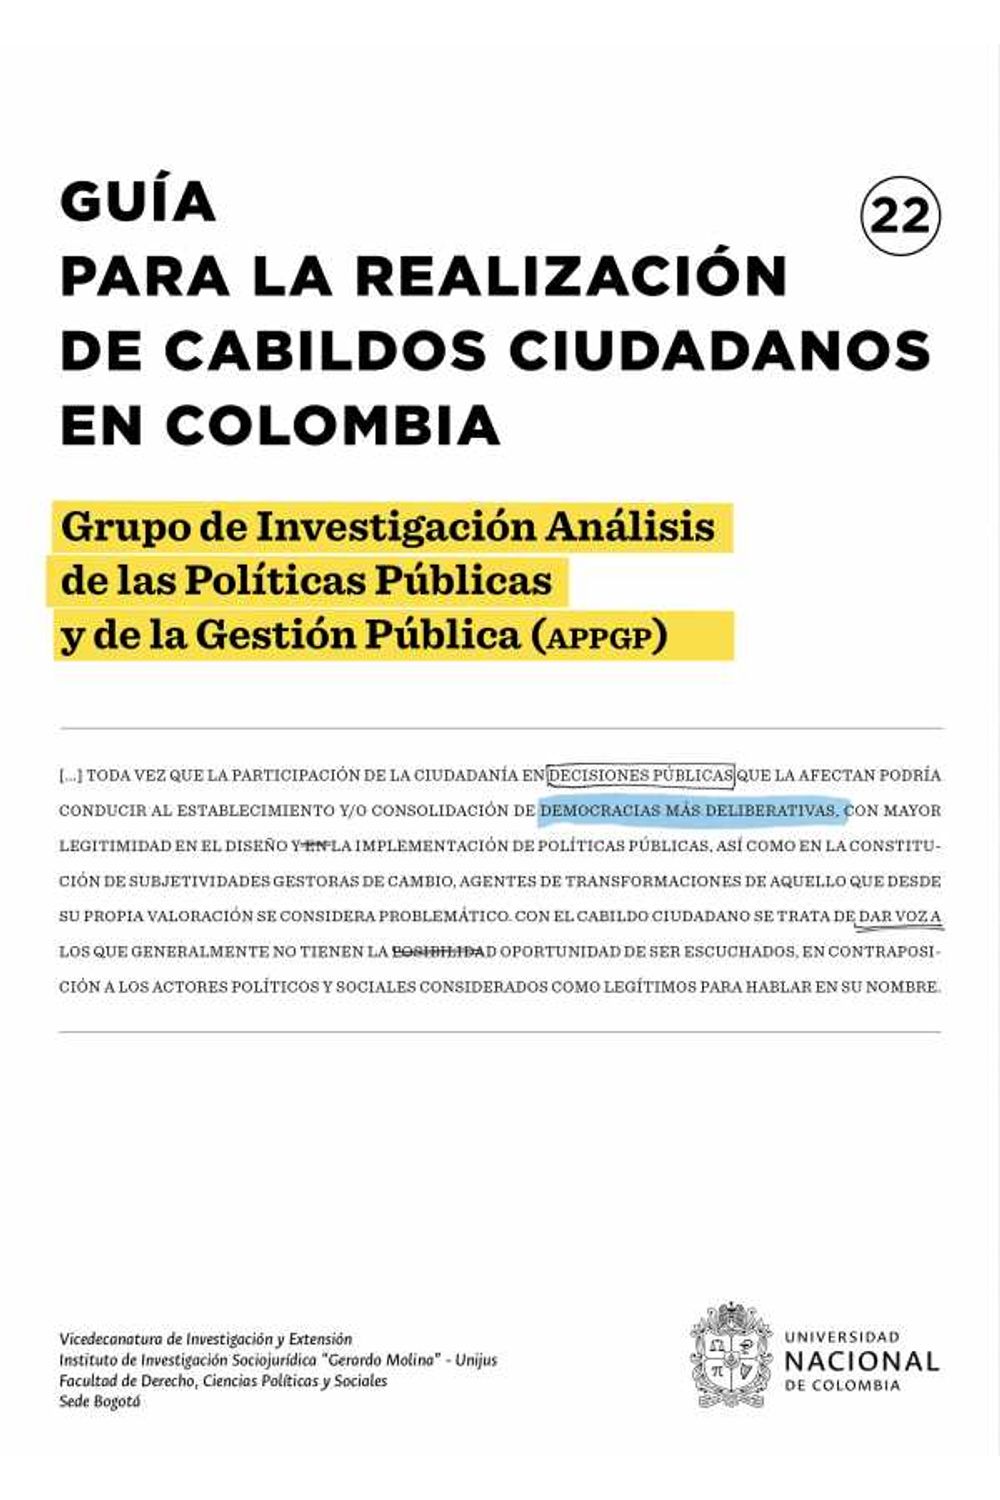 bw-guiacutea-para-la-realizacioacuten-de-cabildos-ciudadanos-en-colombia-universidad-nacional-de-colombia-9789587944983